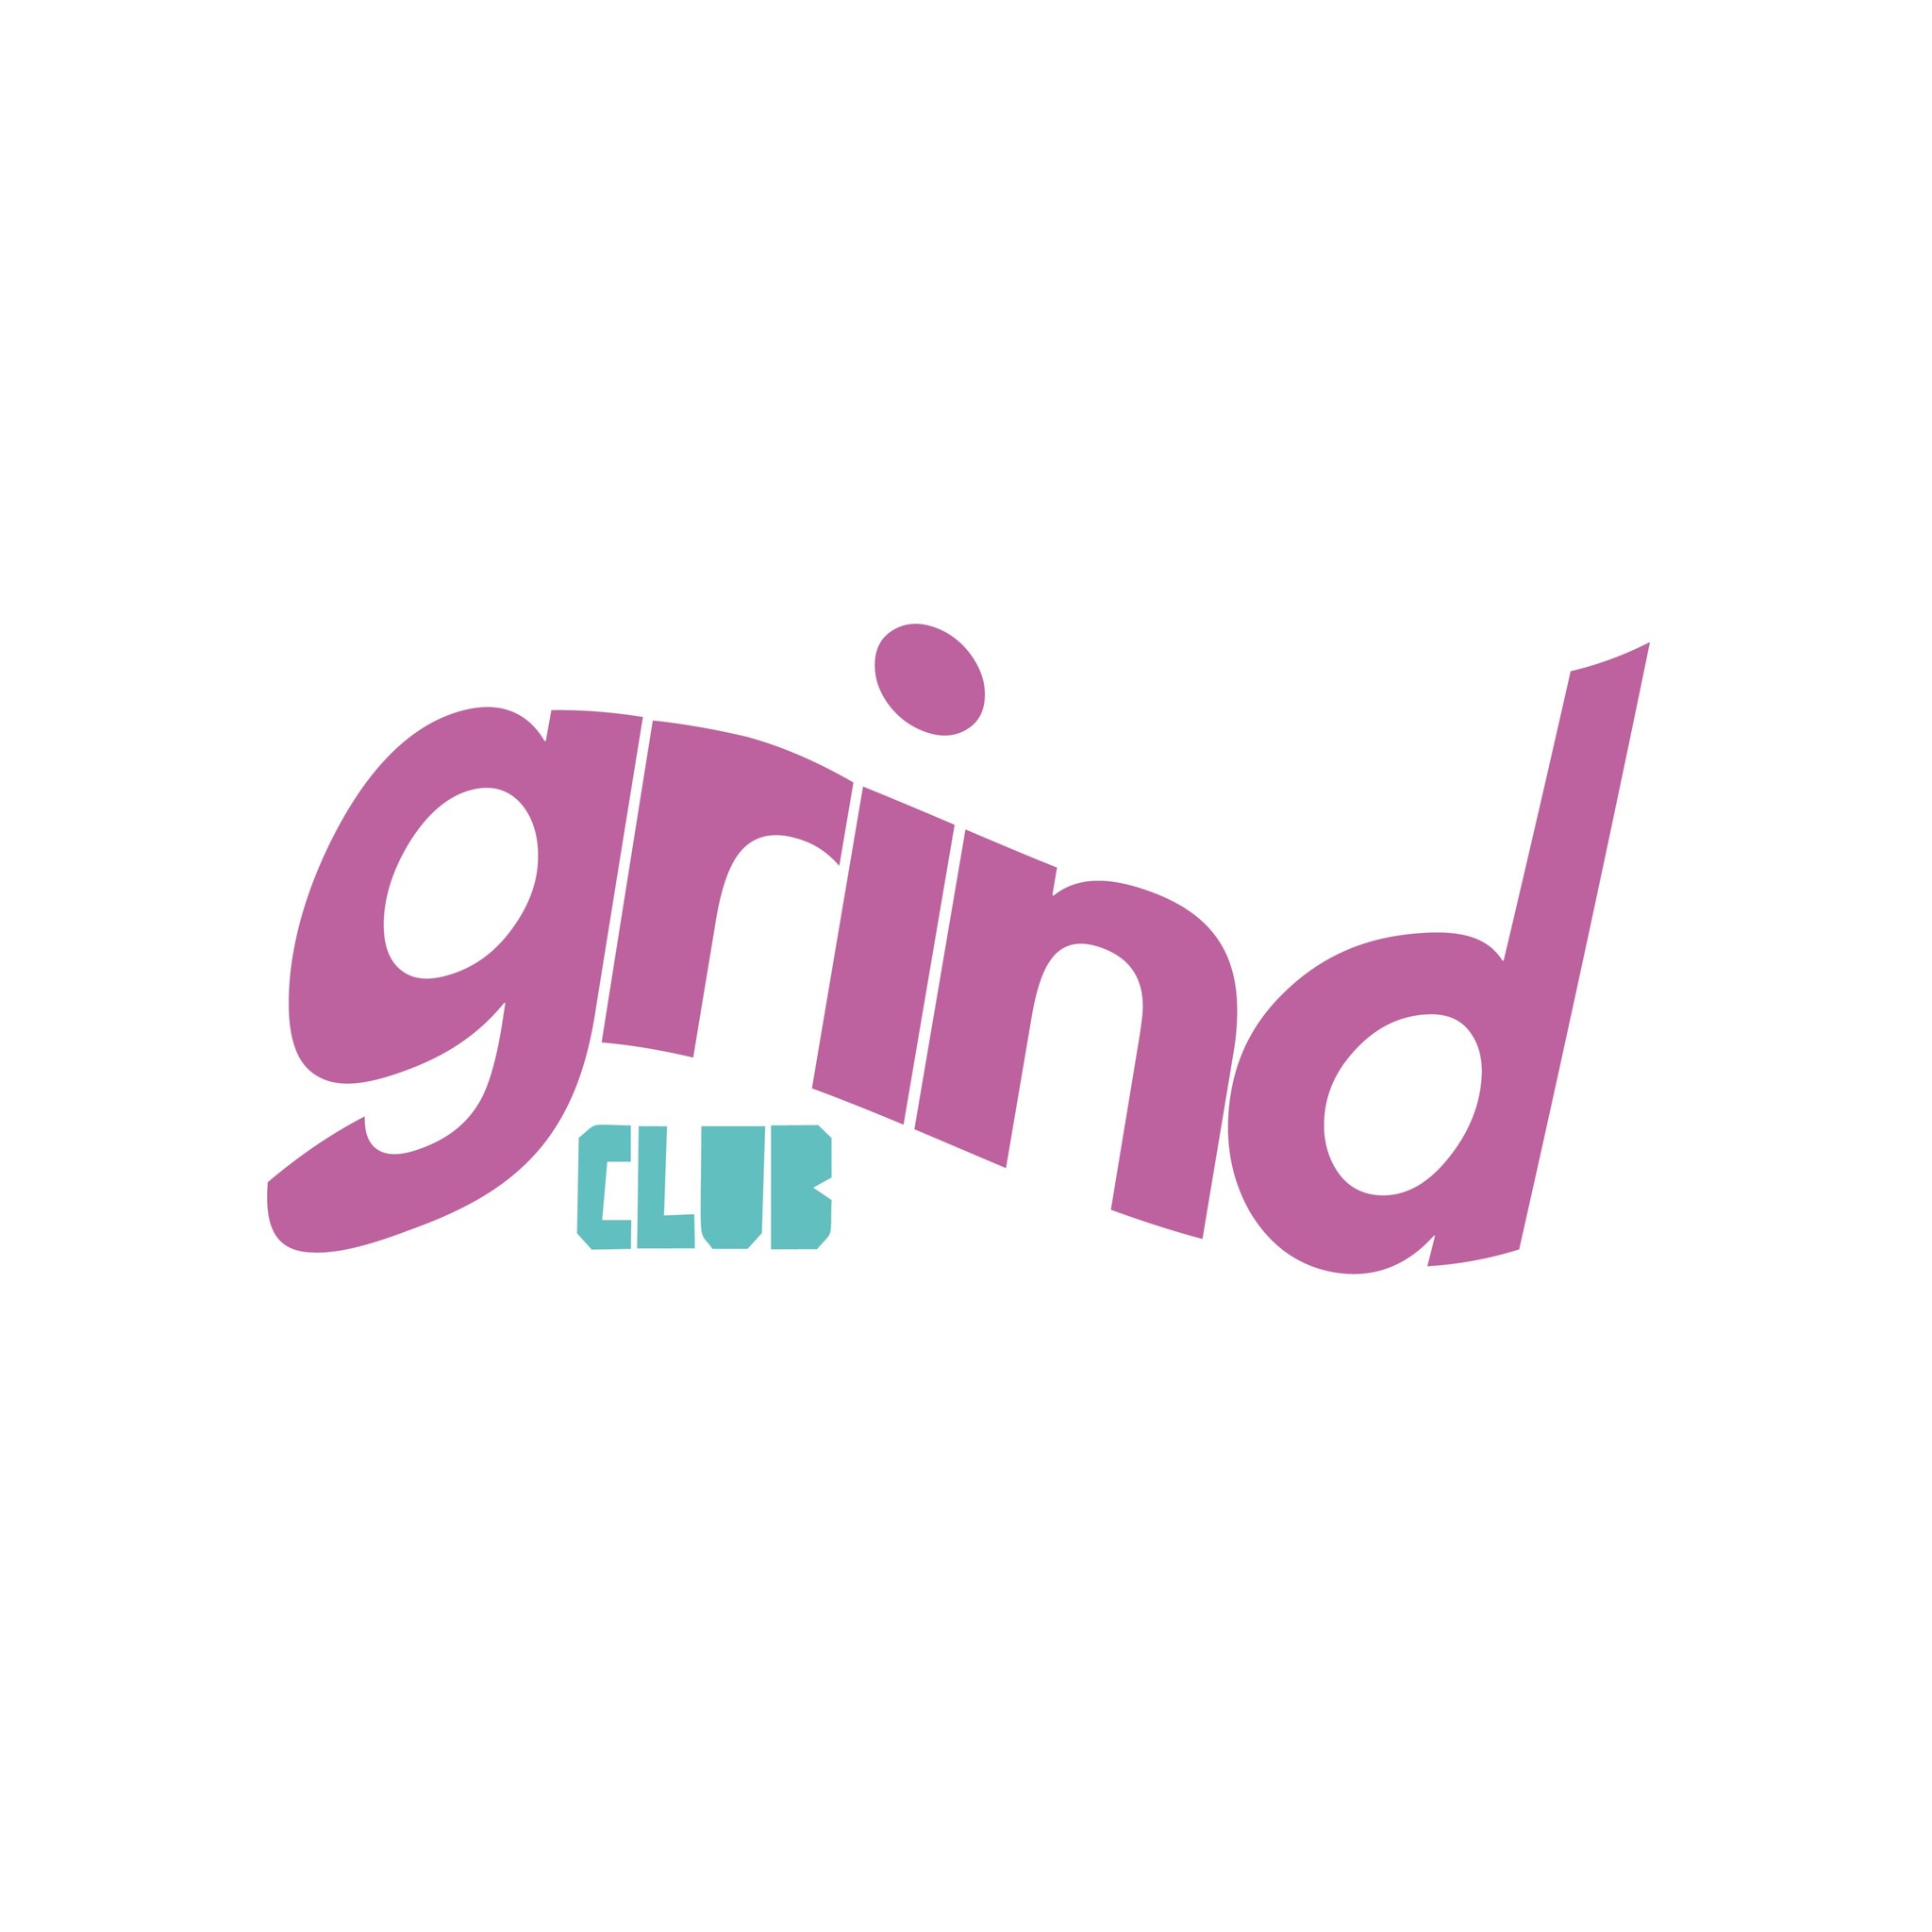 GRINDCLUB™ (roastedbyCFI)